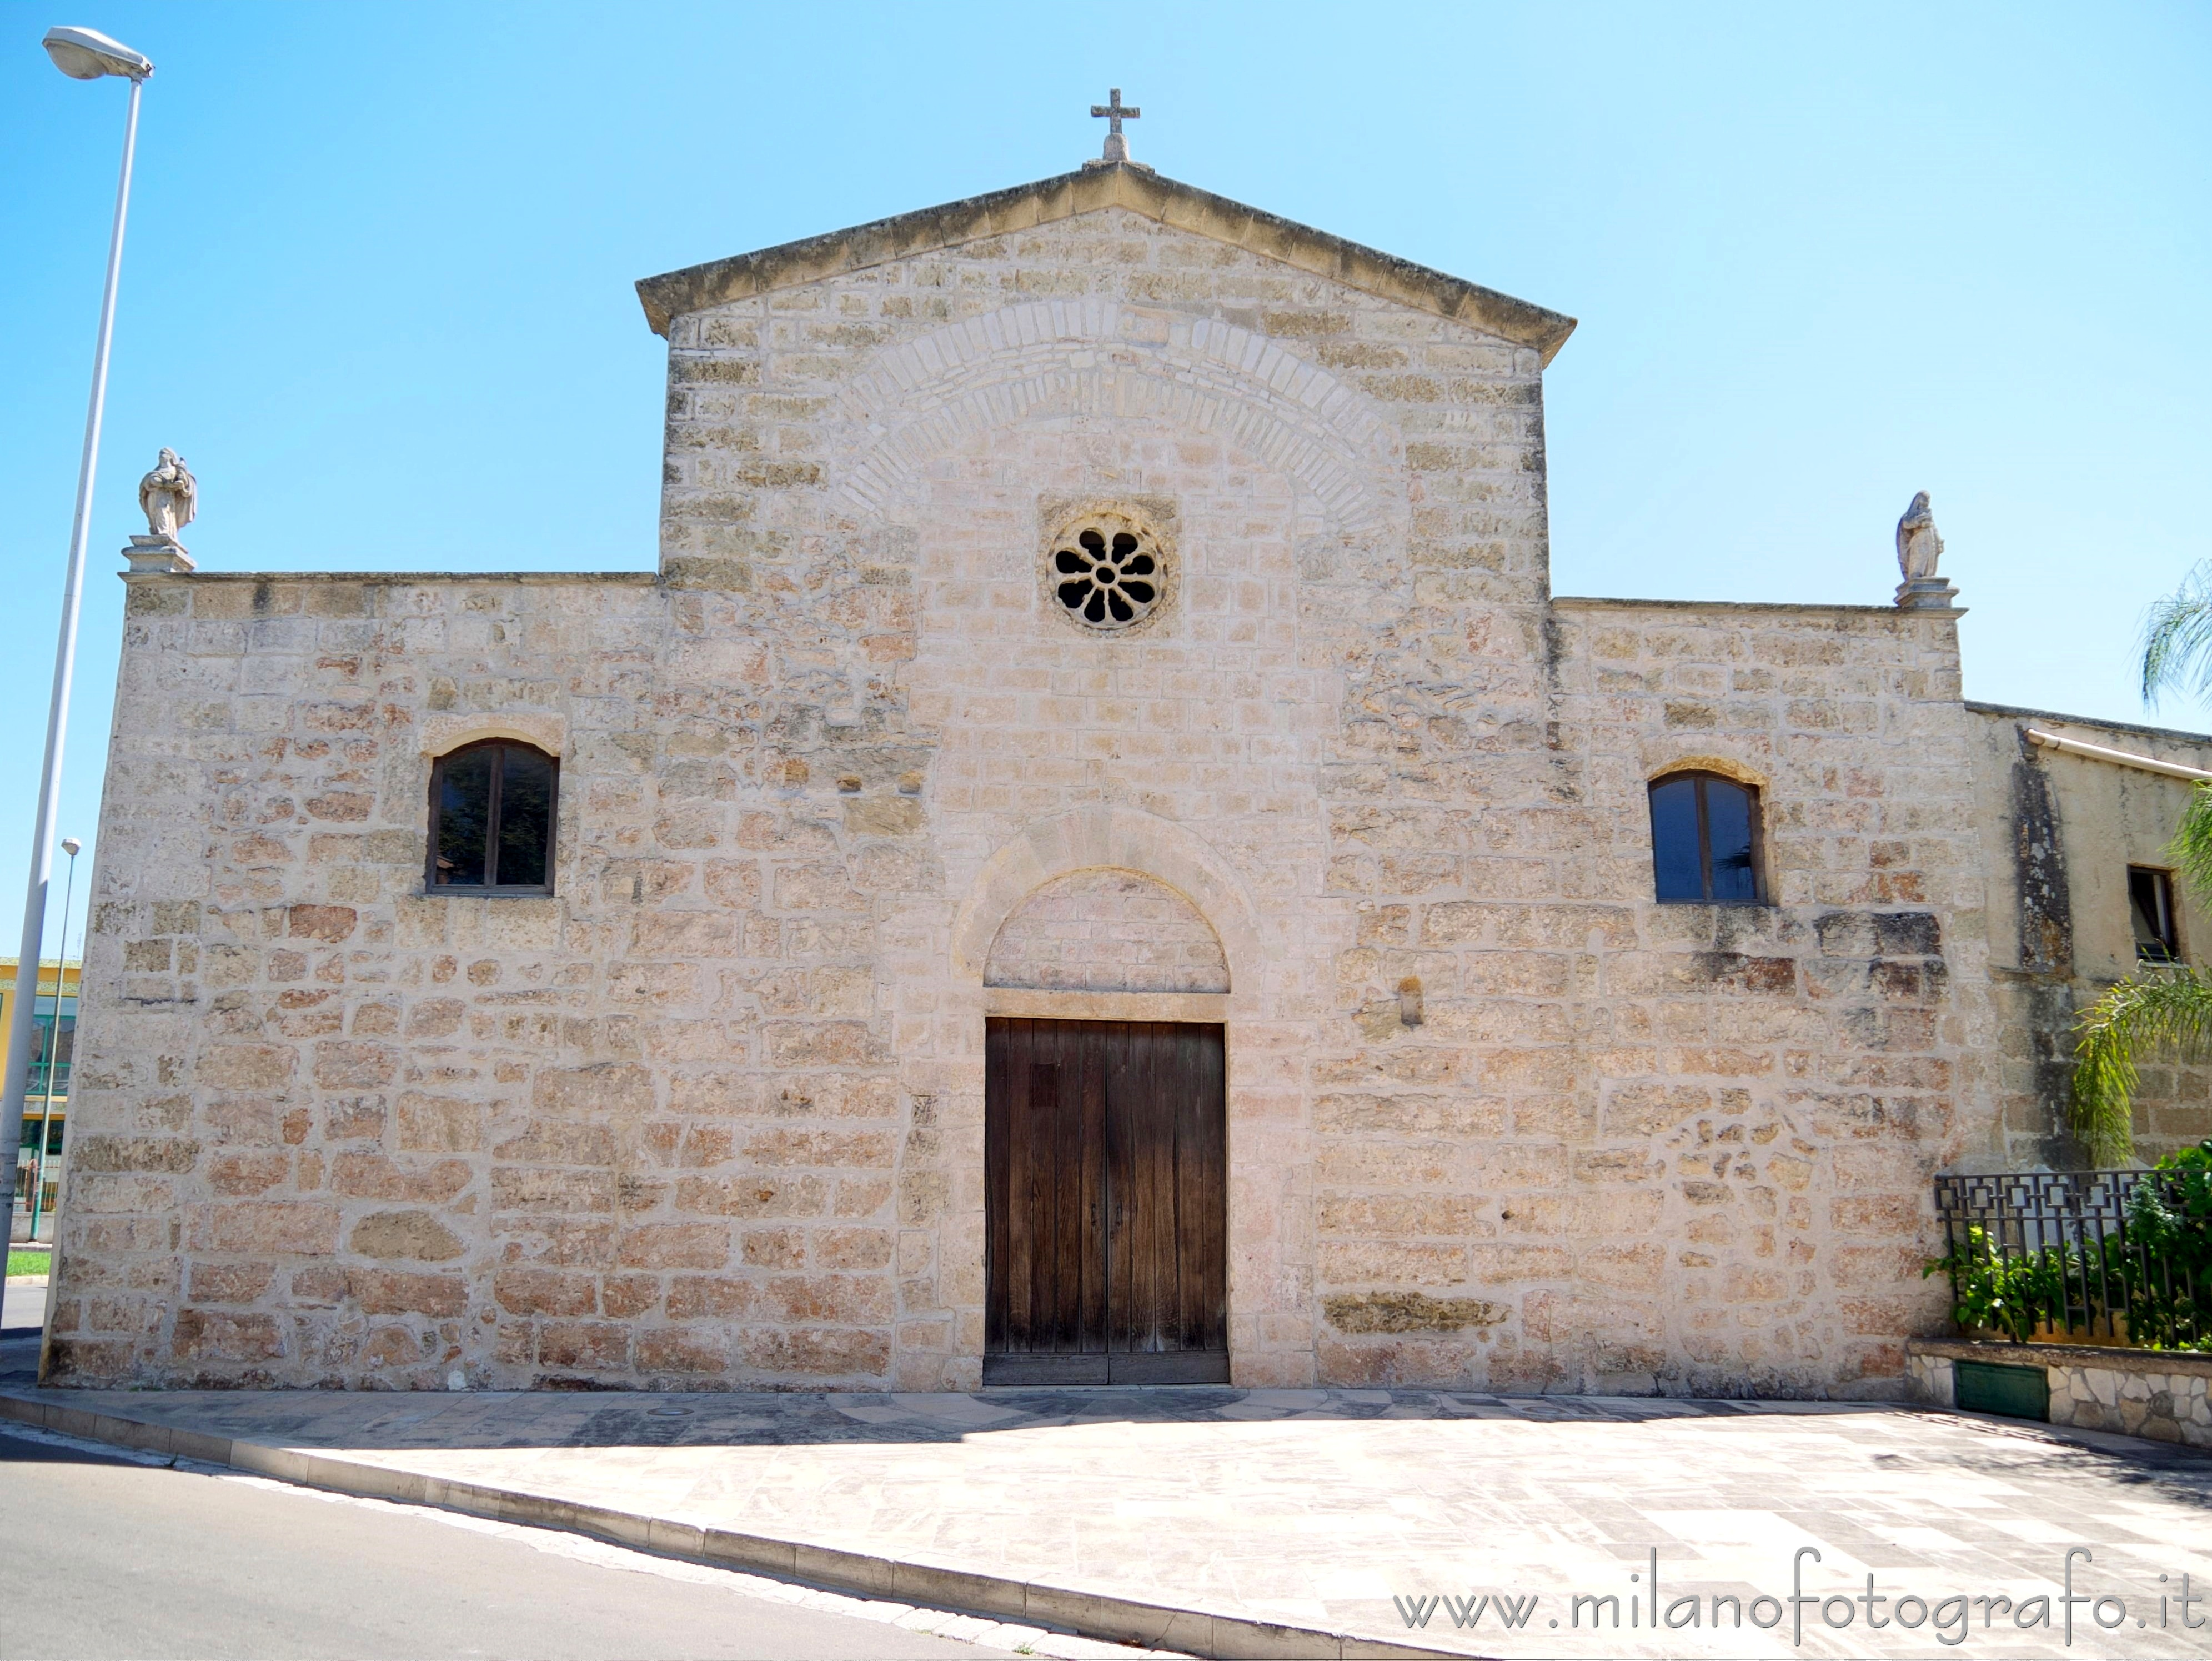 Casarano (Lecce, Italy): Facade of the Church of Santa Maria della Croce - Casarano (Lecce, Italy)